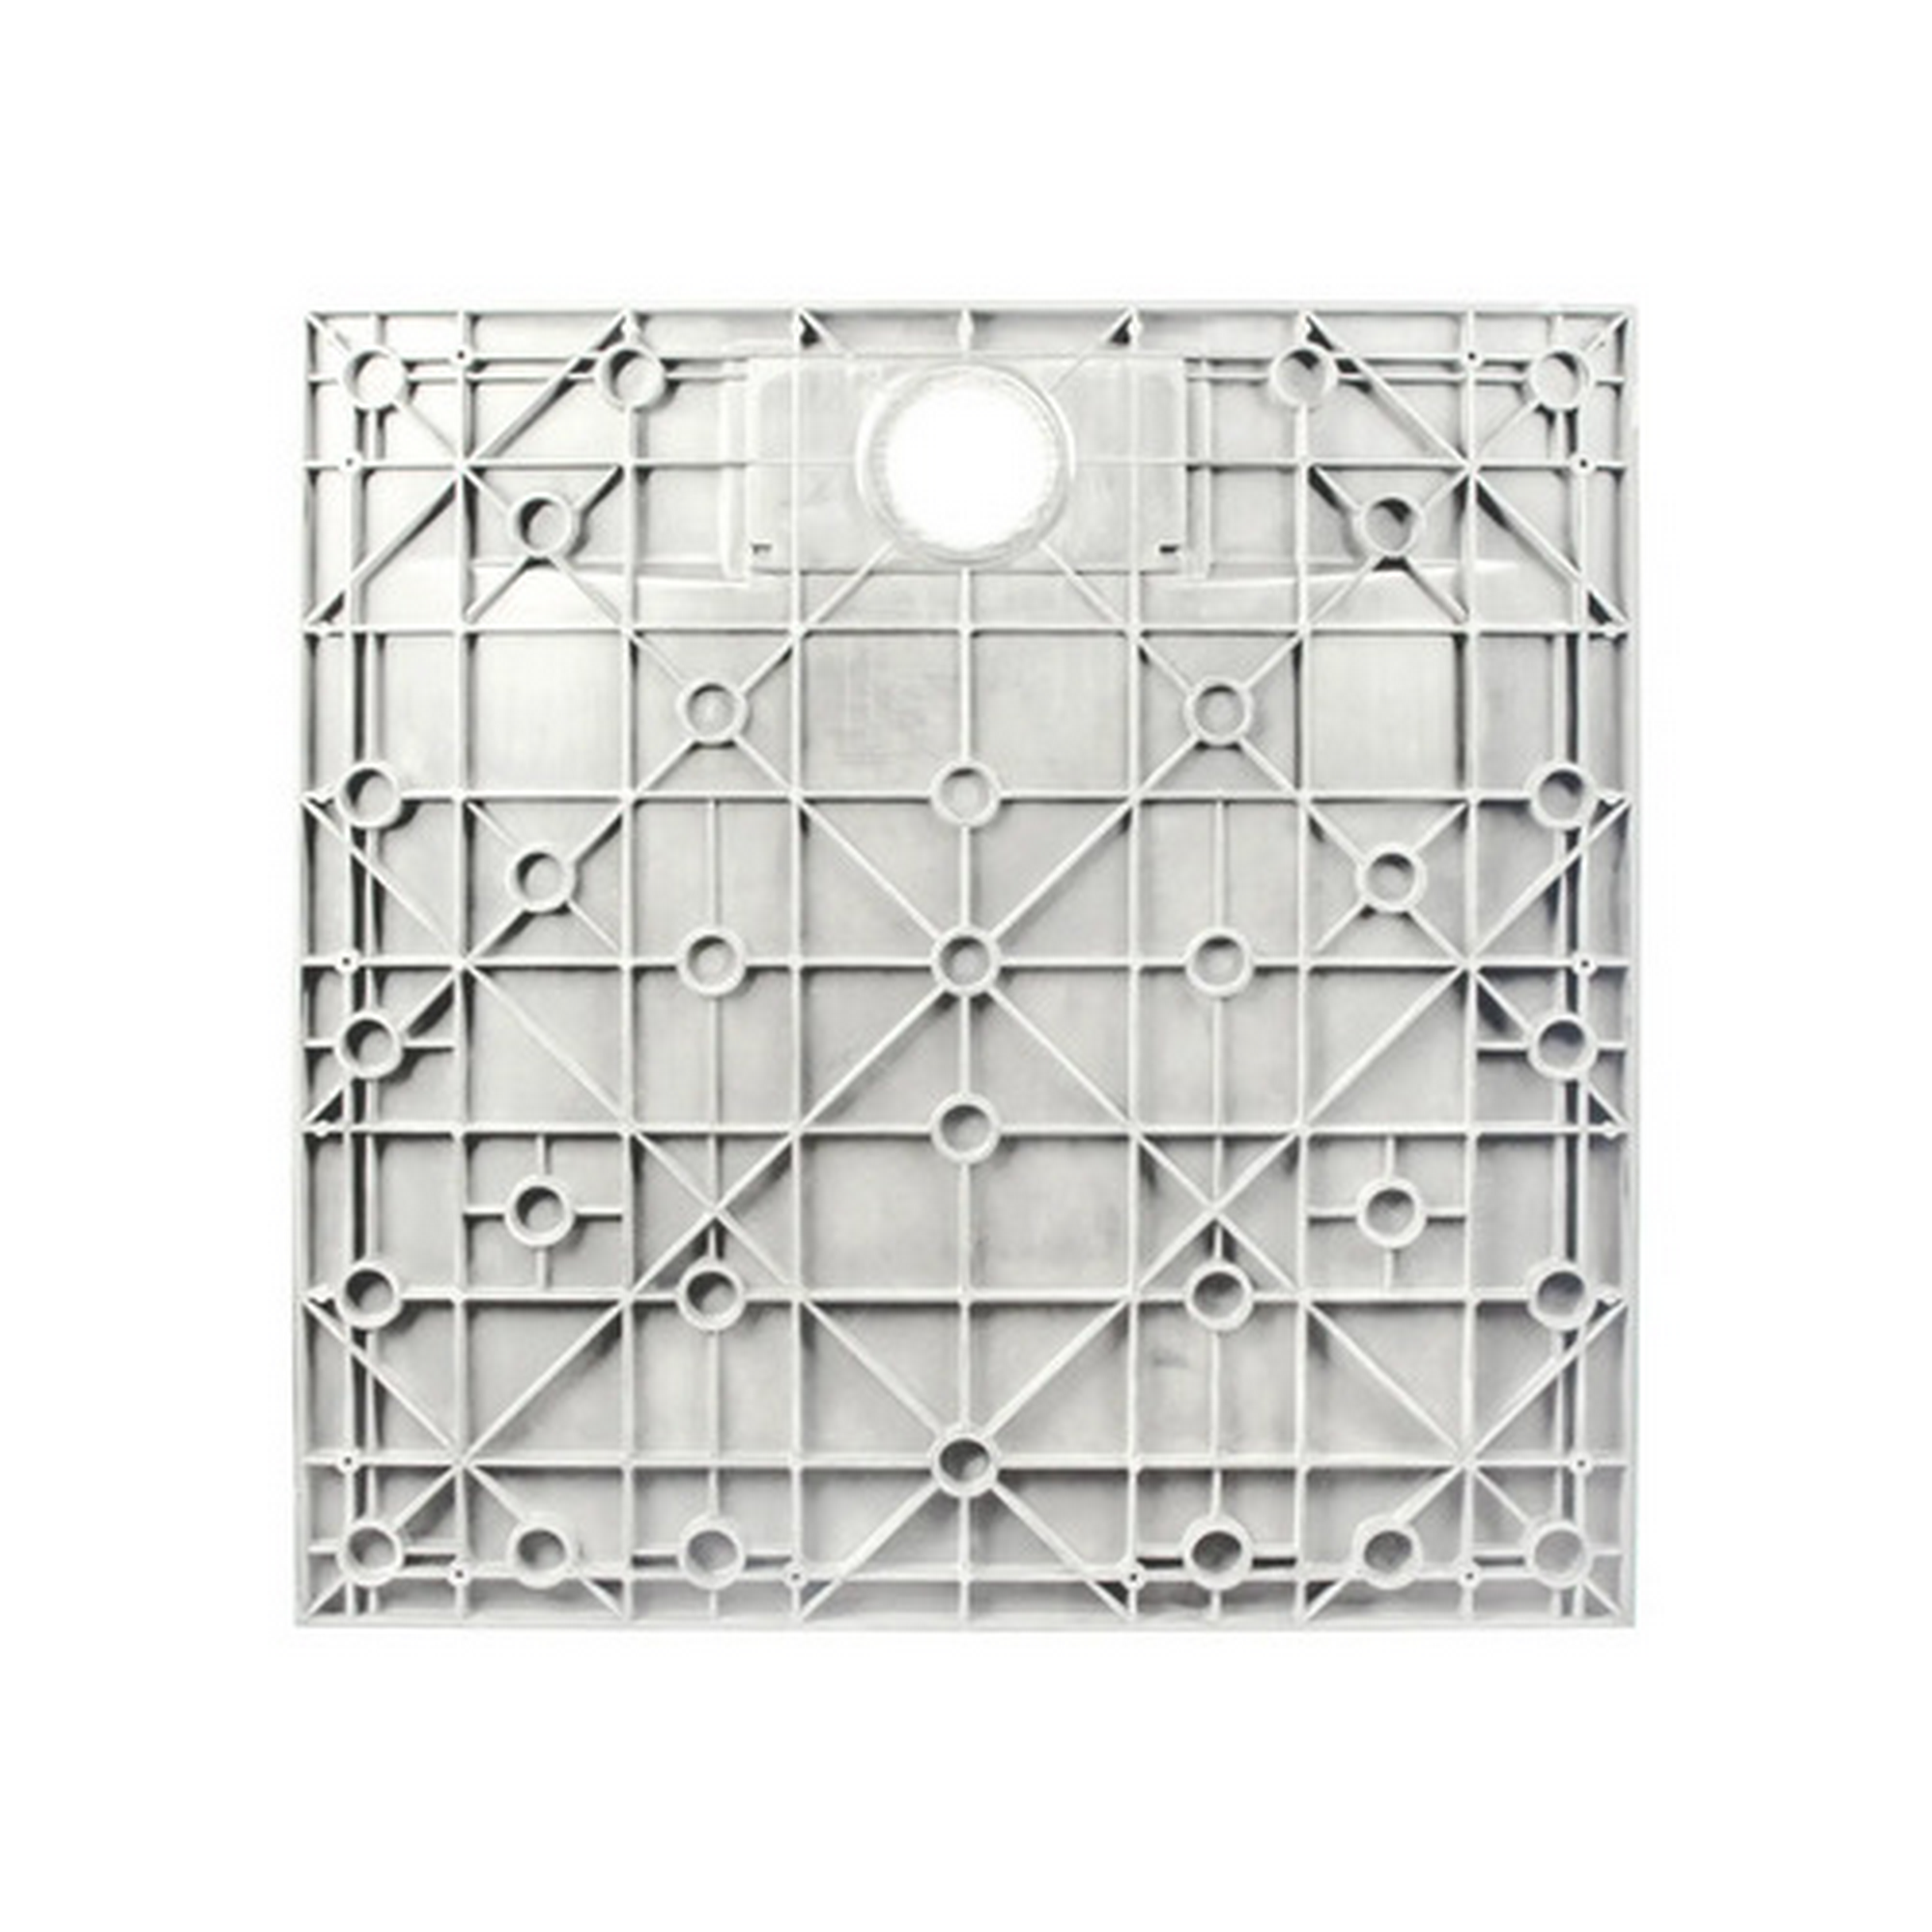 Duschwanne 'DWM-Tec' Steinstruktur weiß 70 x 150 cm + product picture